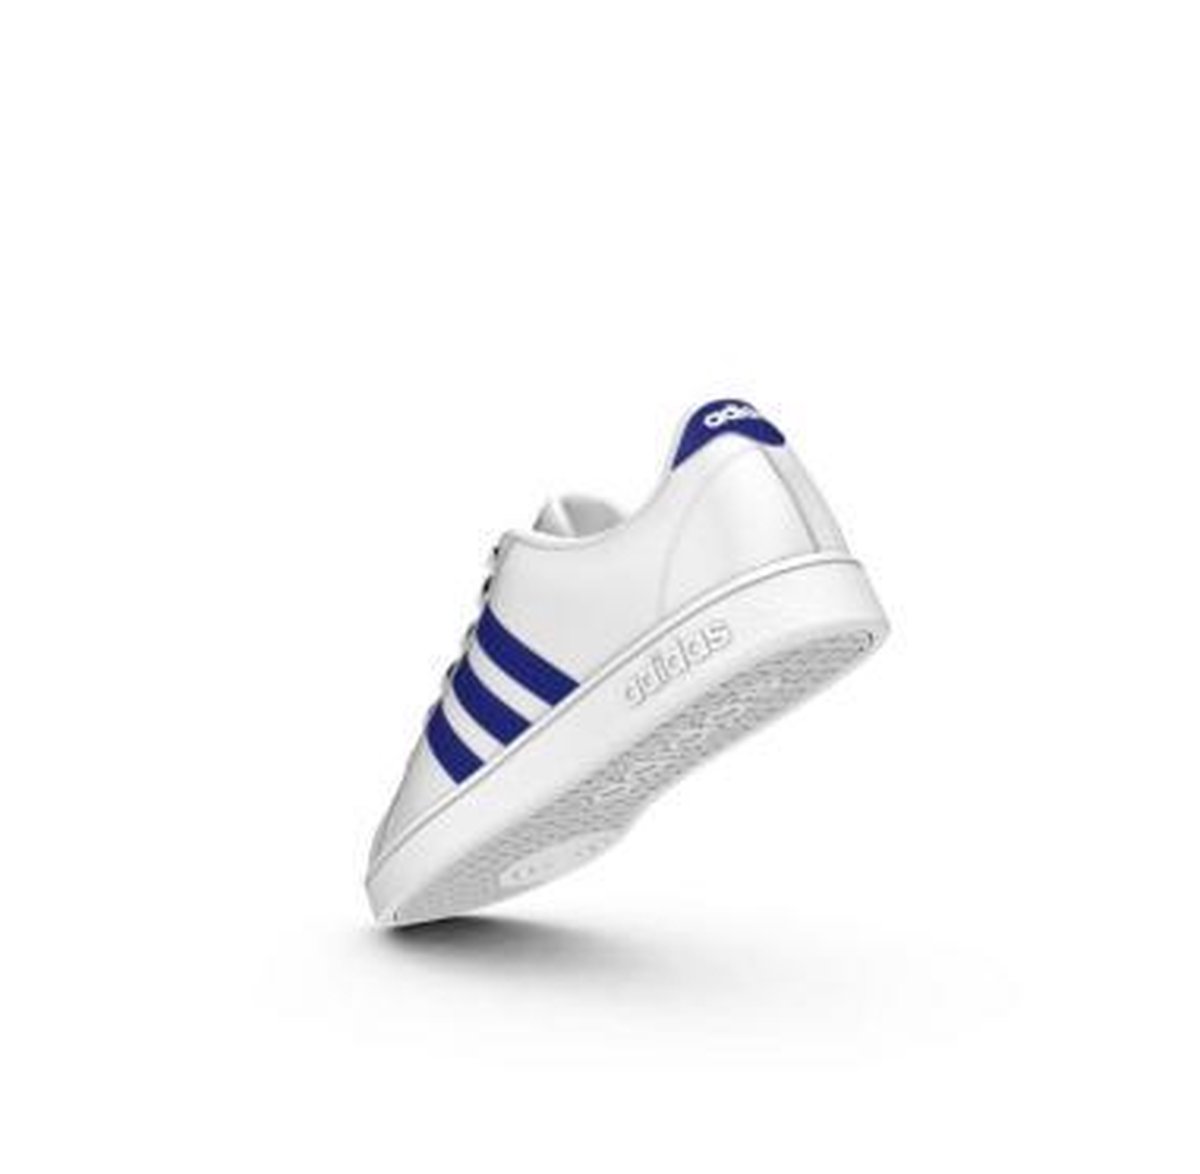 een keer van nu af aan overschot Adidas BASELINE K - wit/blauwe streep | bol.com